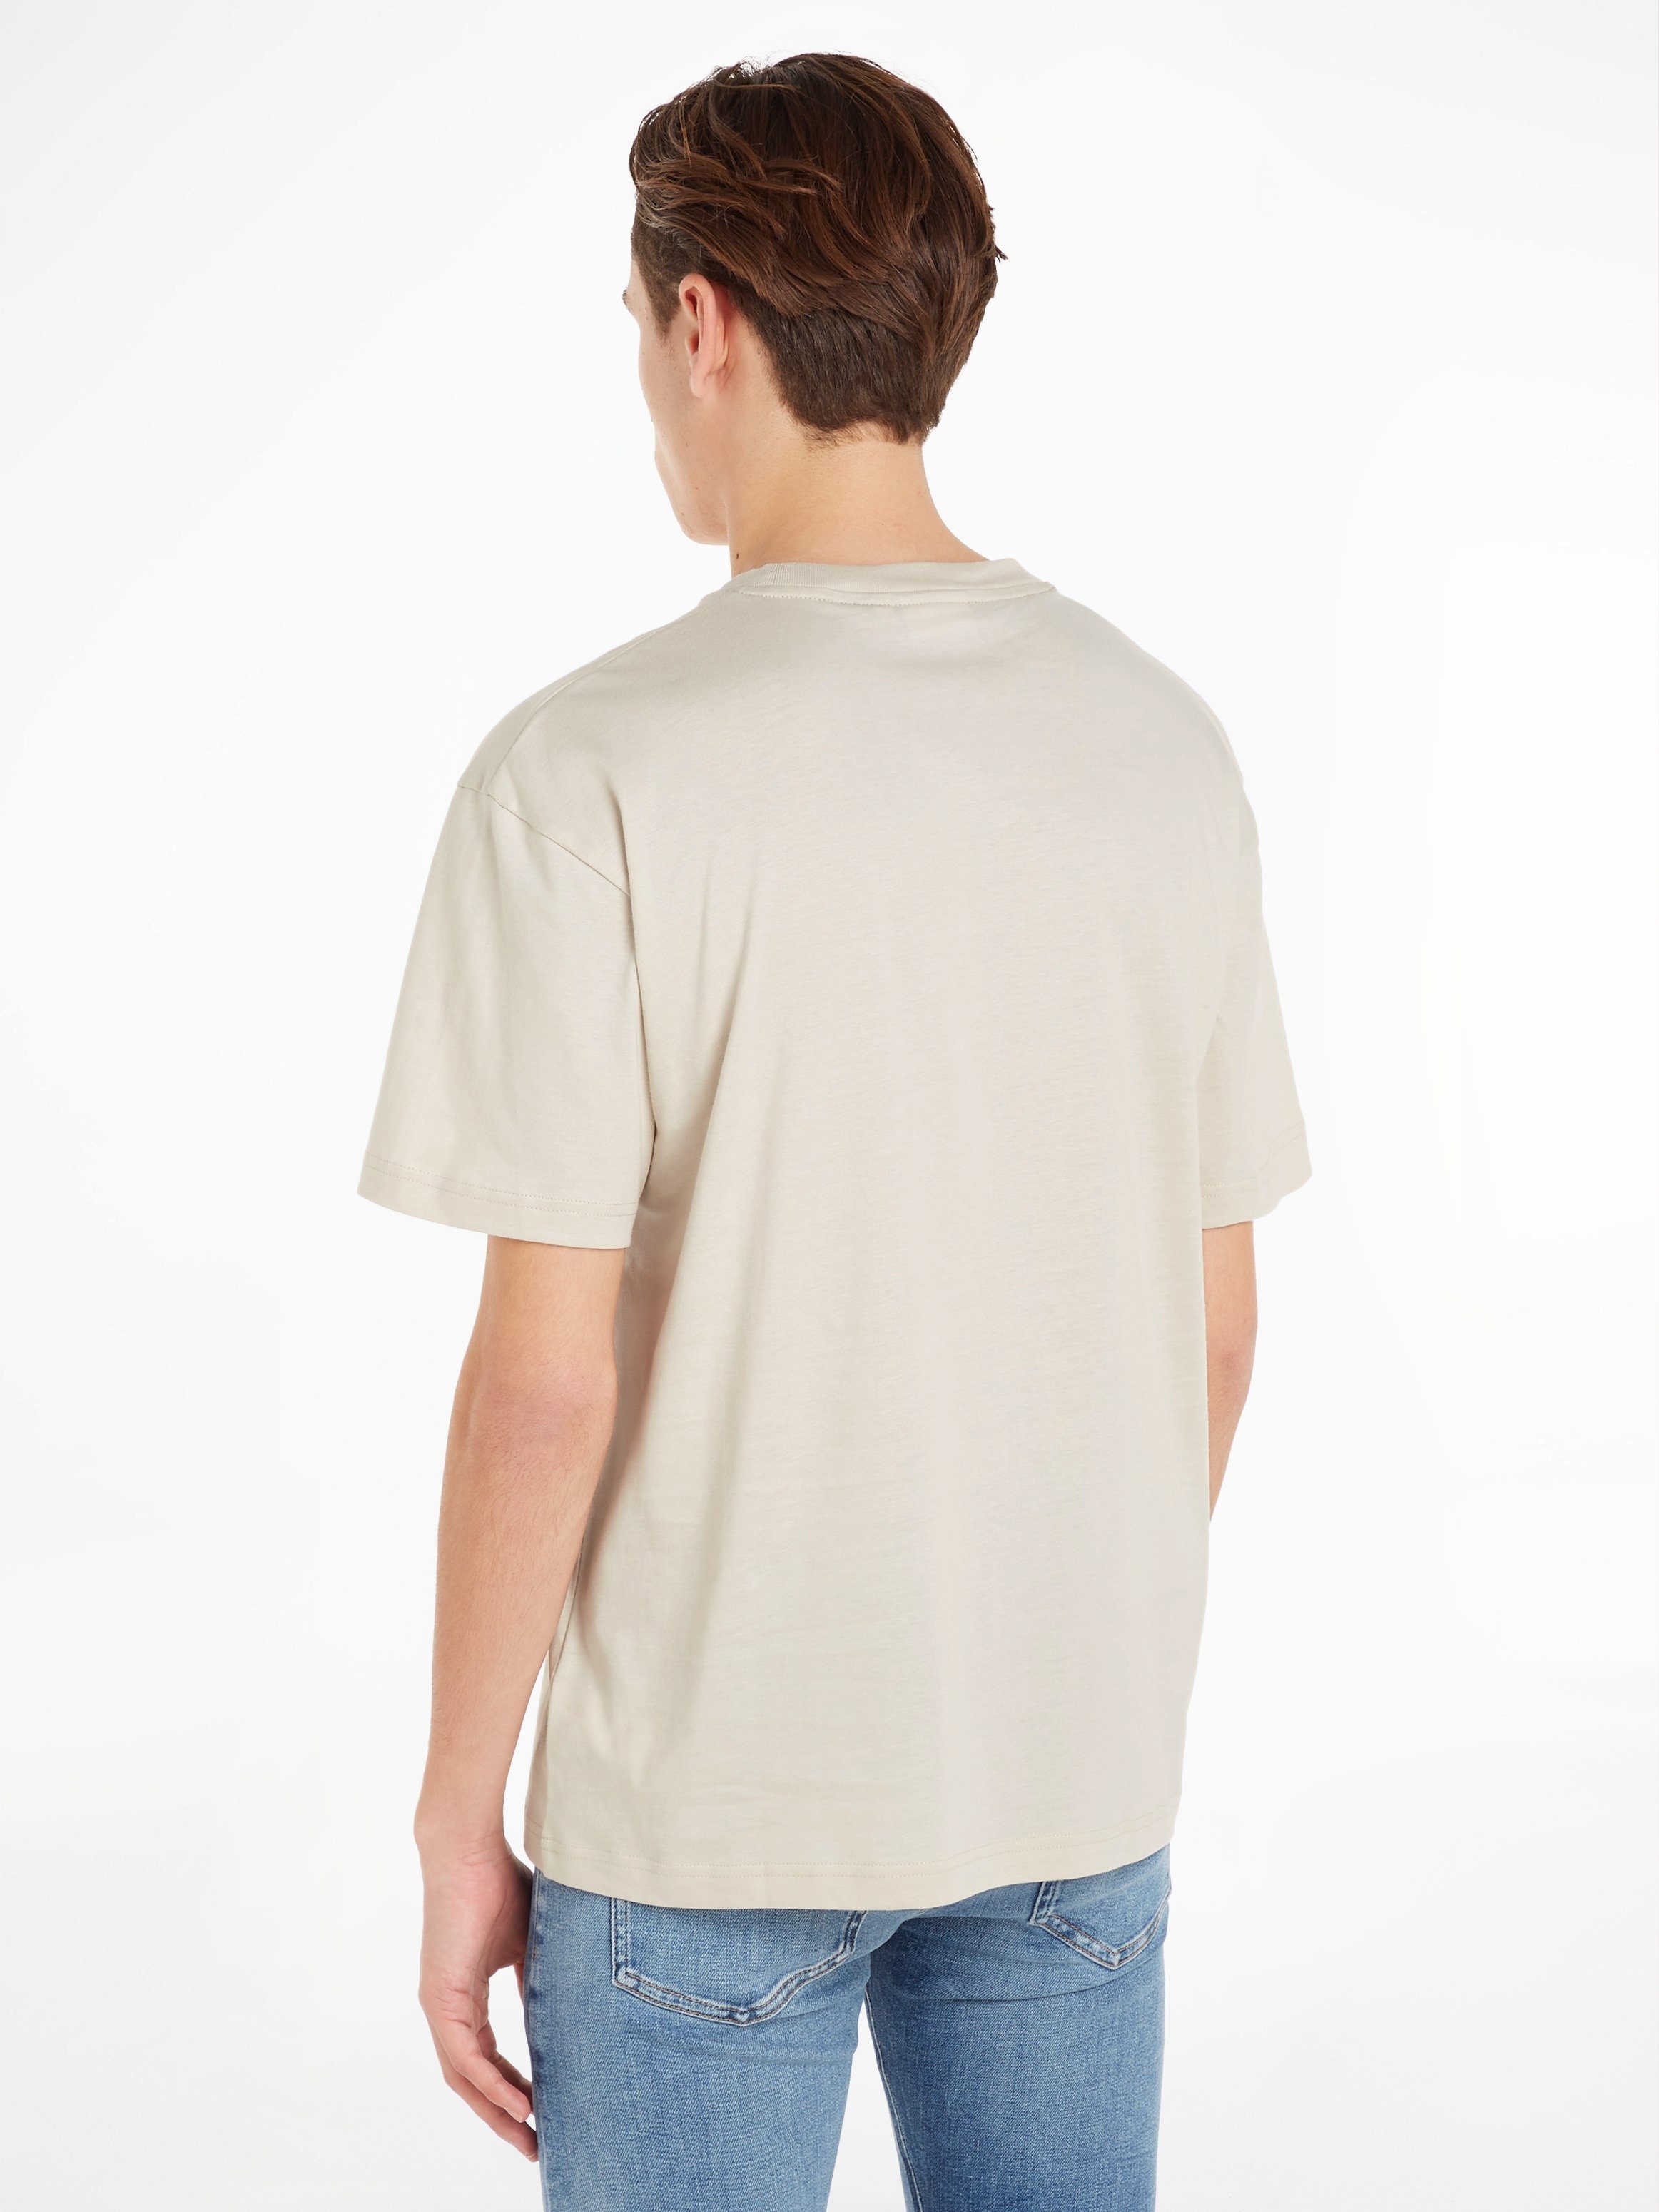 Klein LOGO mit COMFORT Beige Calvin T-SHIRT T-Shirt Markenlabel aufgedrucktem Stony HERO